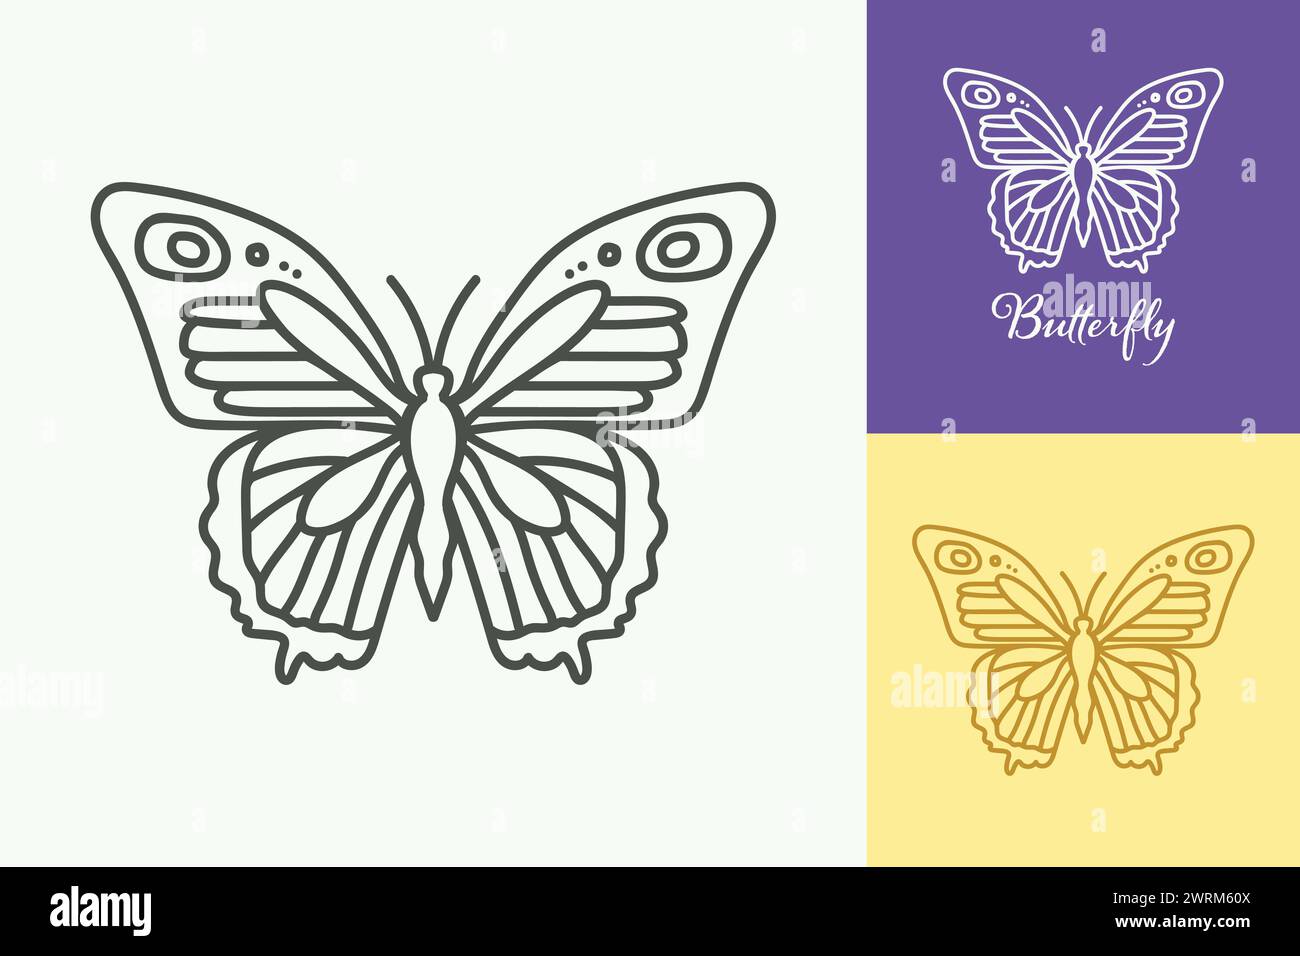 Una mariposa se dibuja en una serie de tres colores diferentes. La mariposa se dibuja en un estilo muy simple, sin sombreado ni detalles Ilustración del Vector